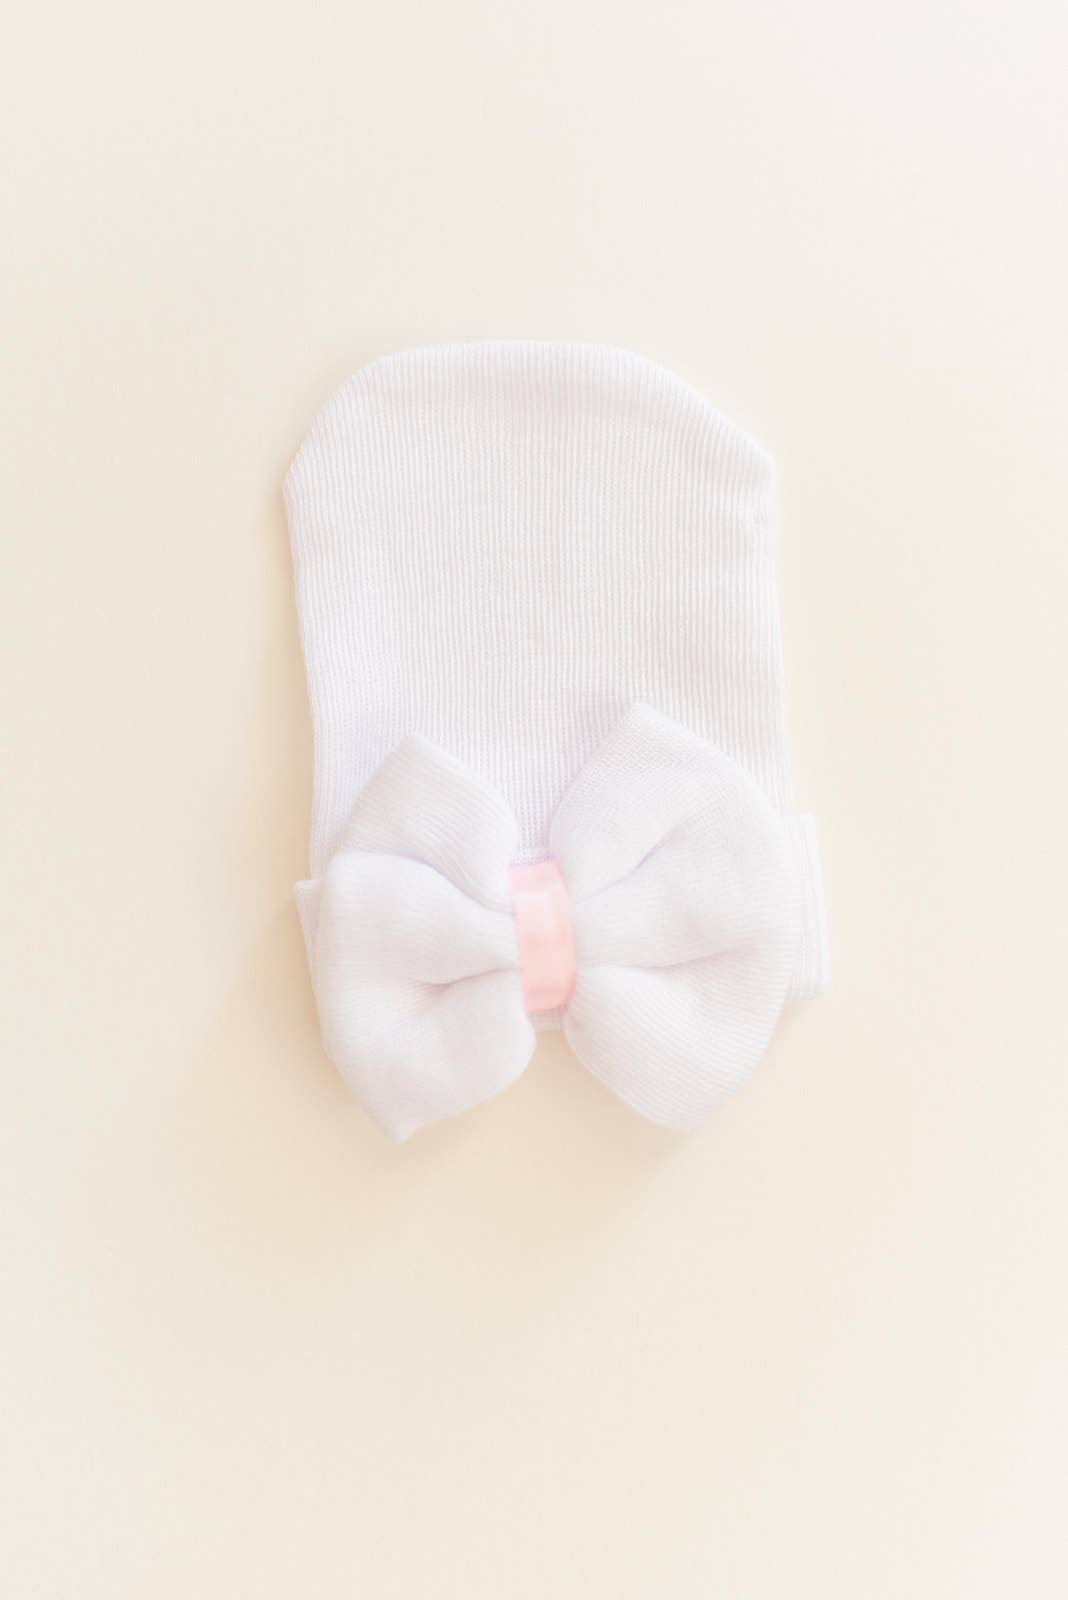 Newborn Bow Hat: White